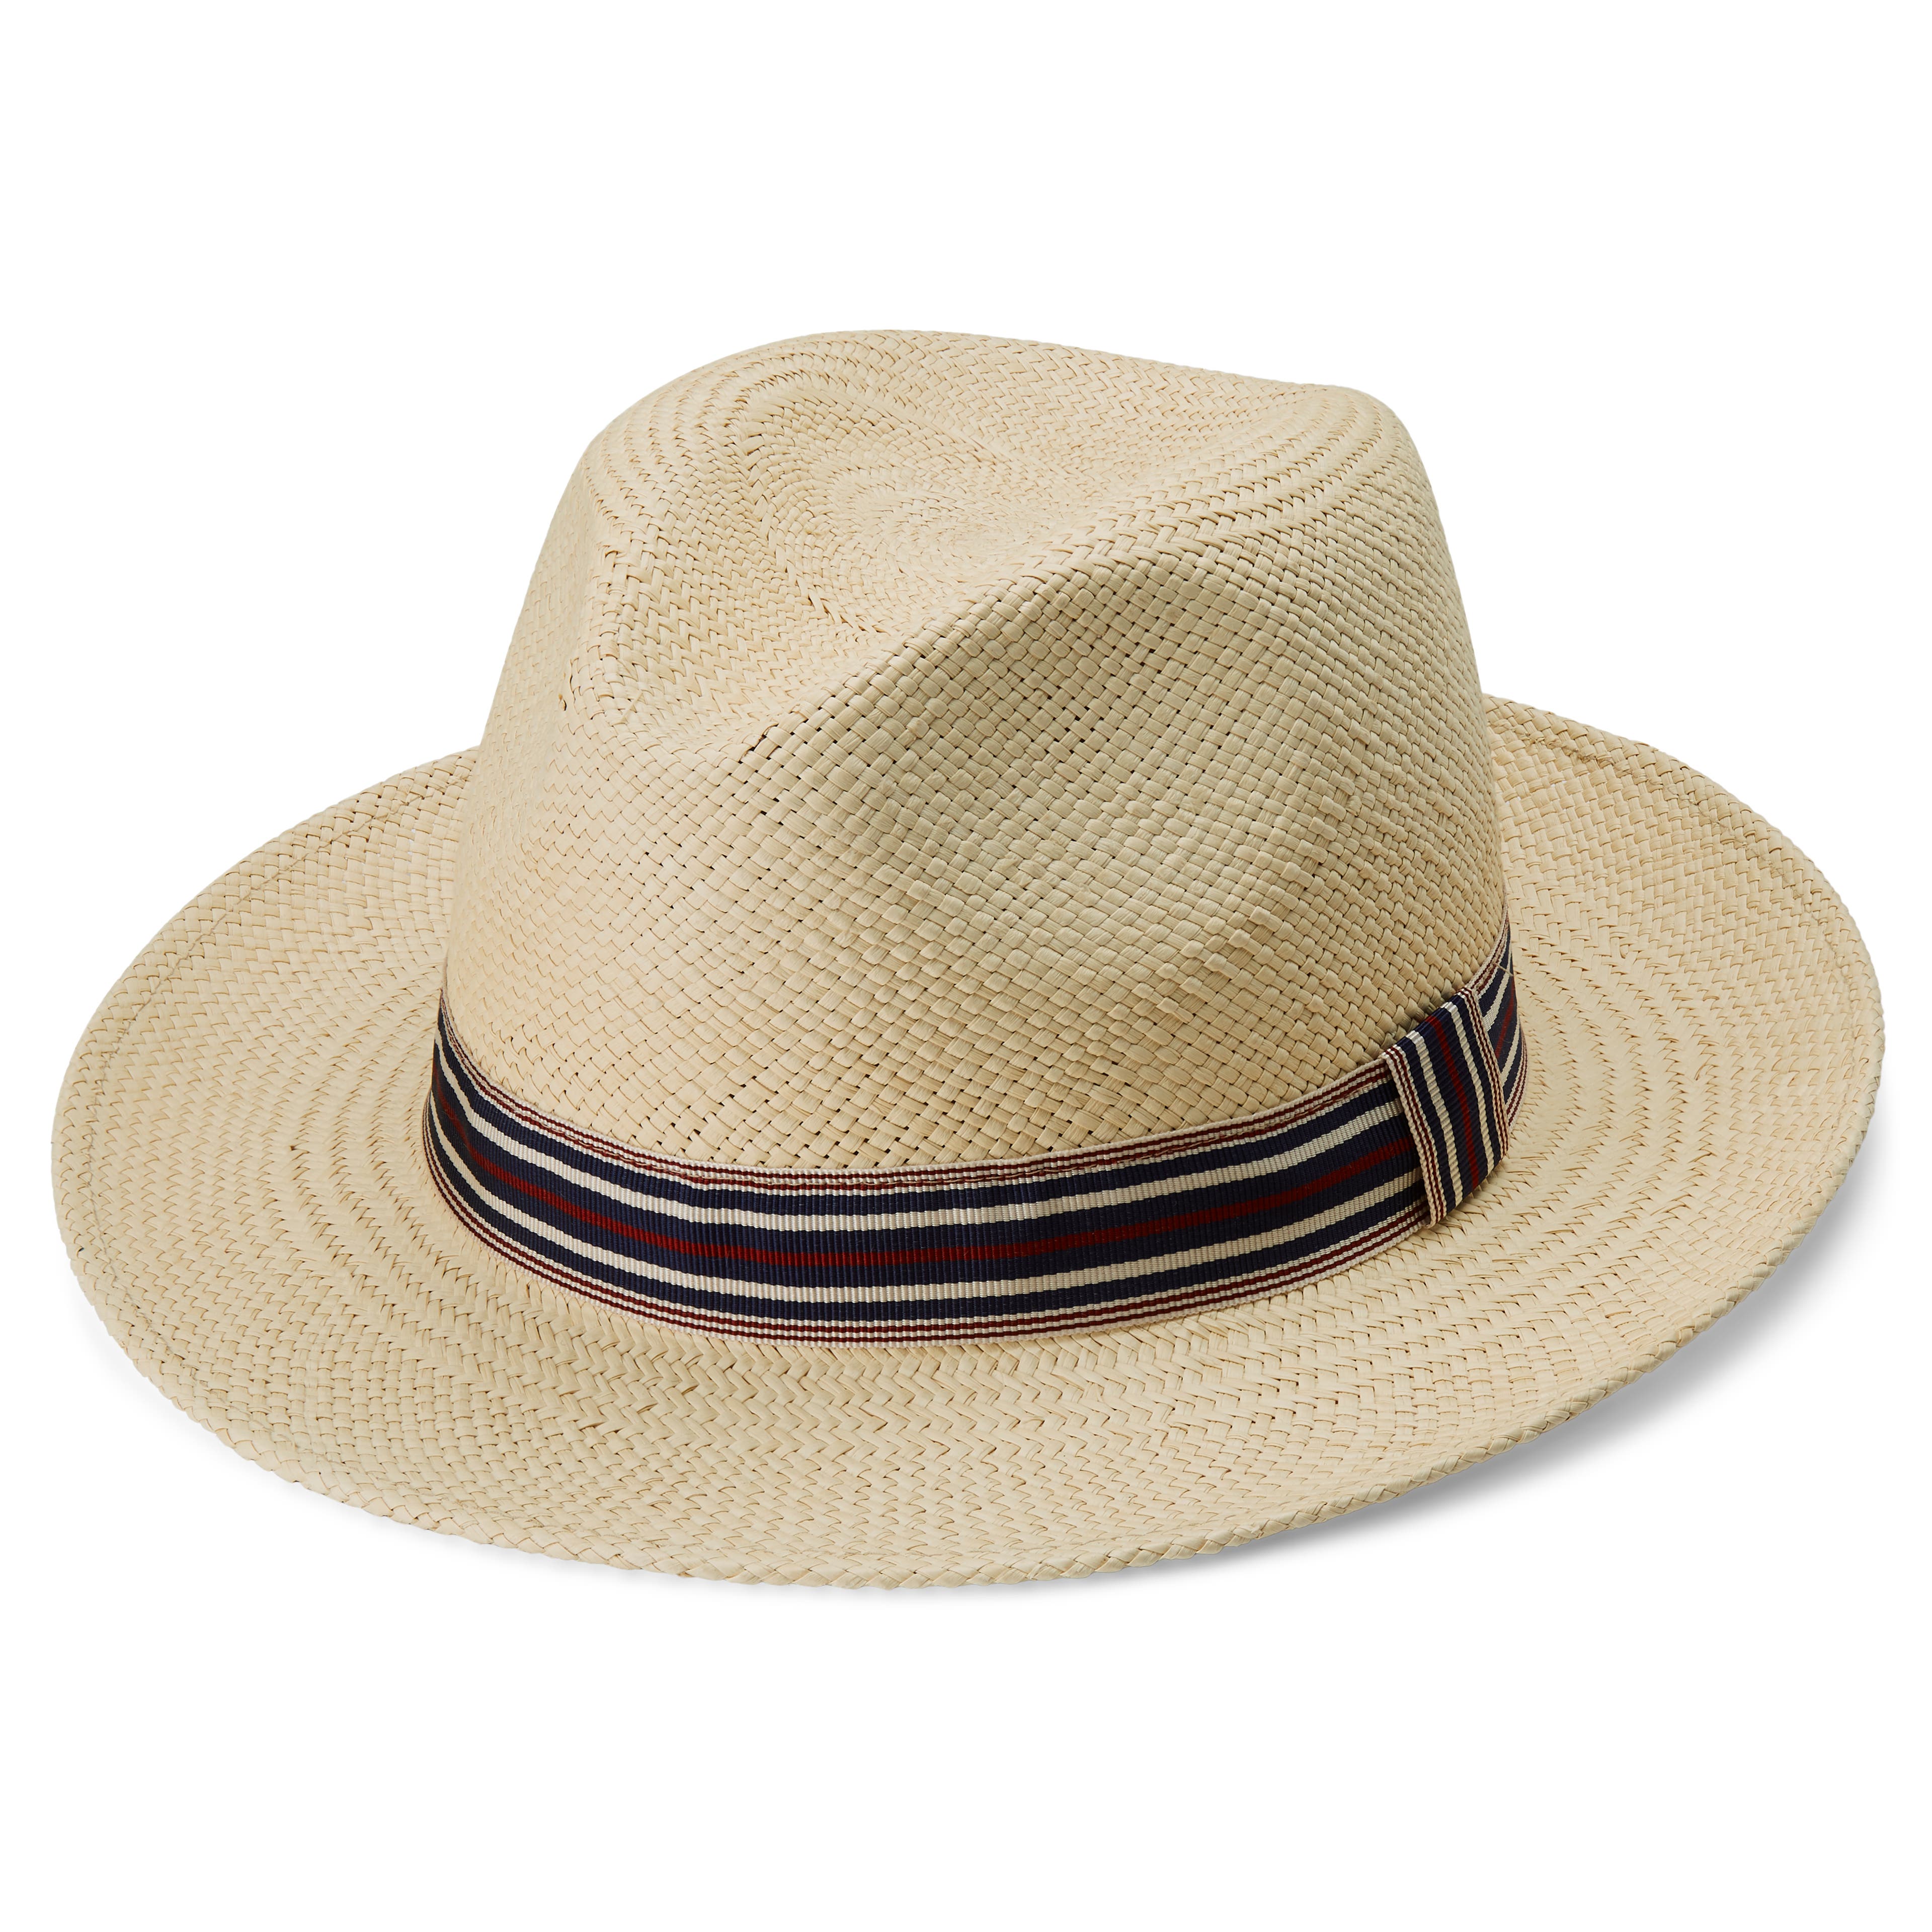 Cappello Panama Piero in colori naturali con fascia a righe